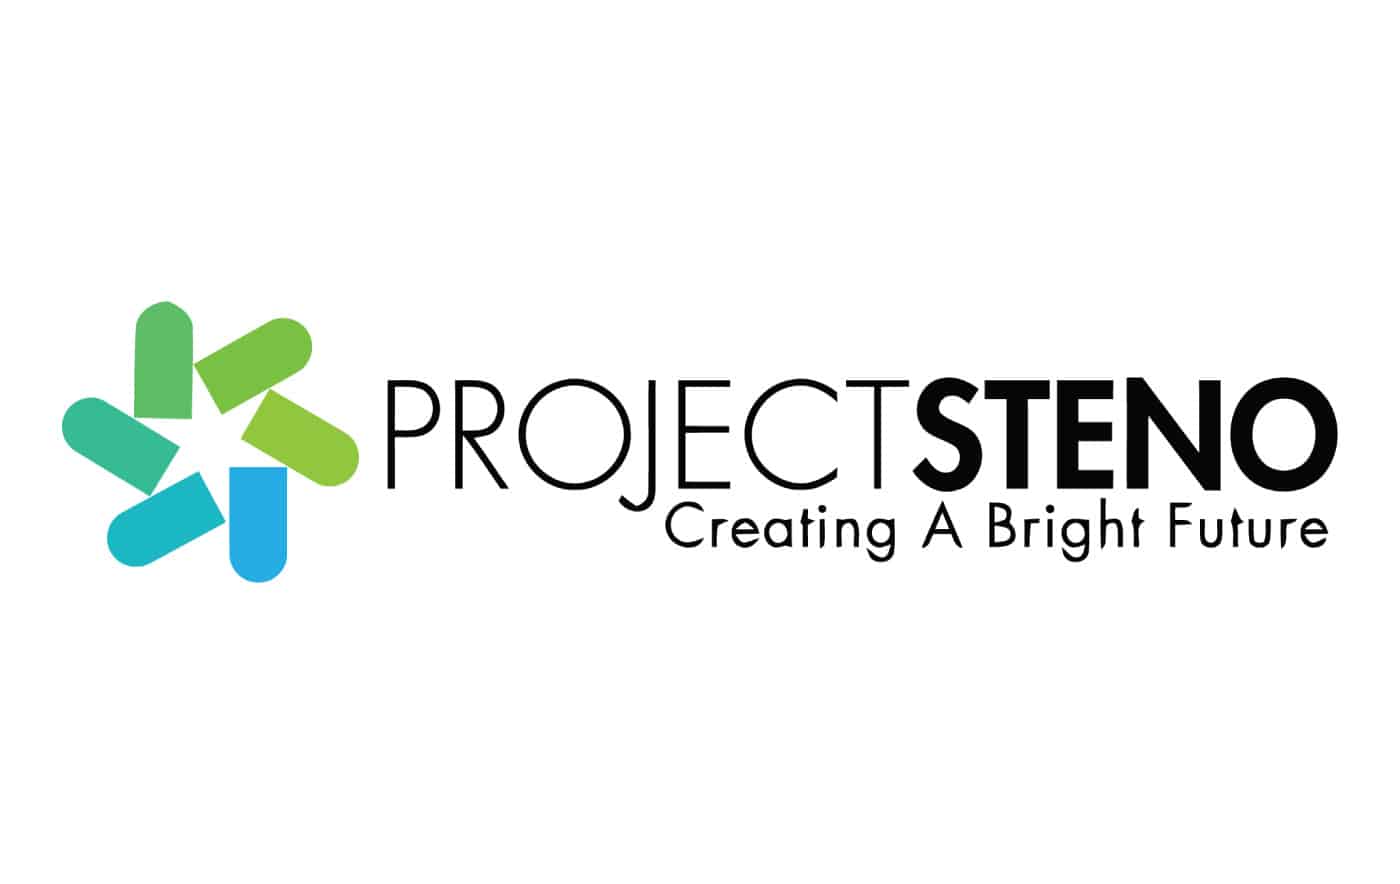 Project Steno Creating A Bright Future logo